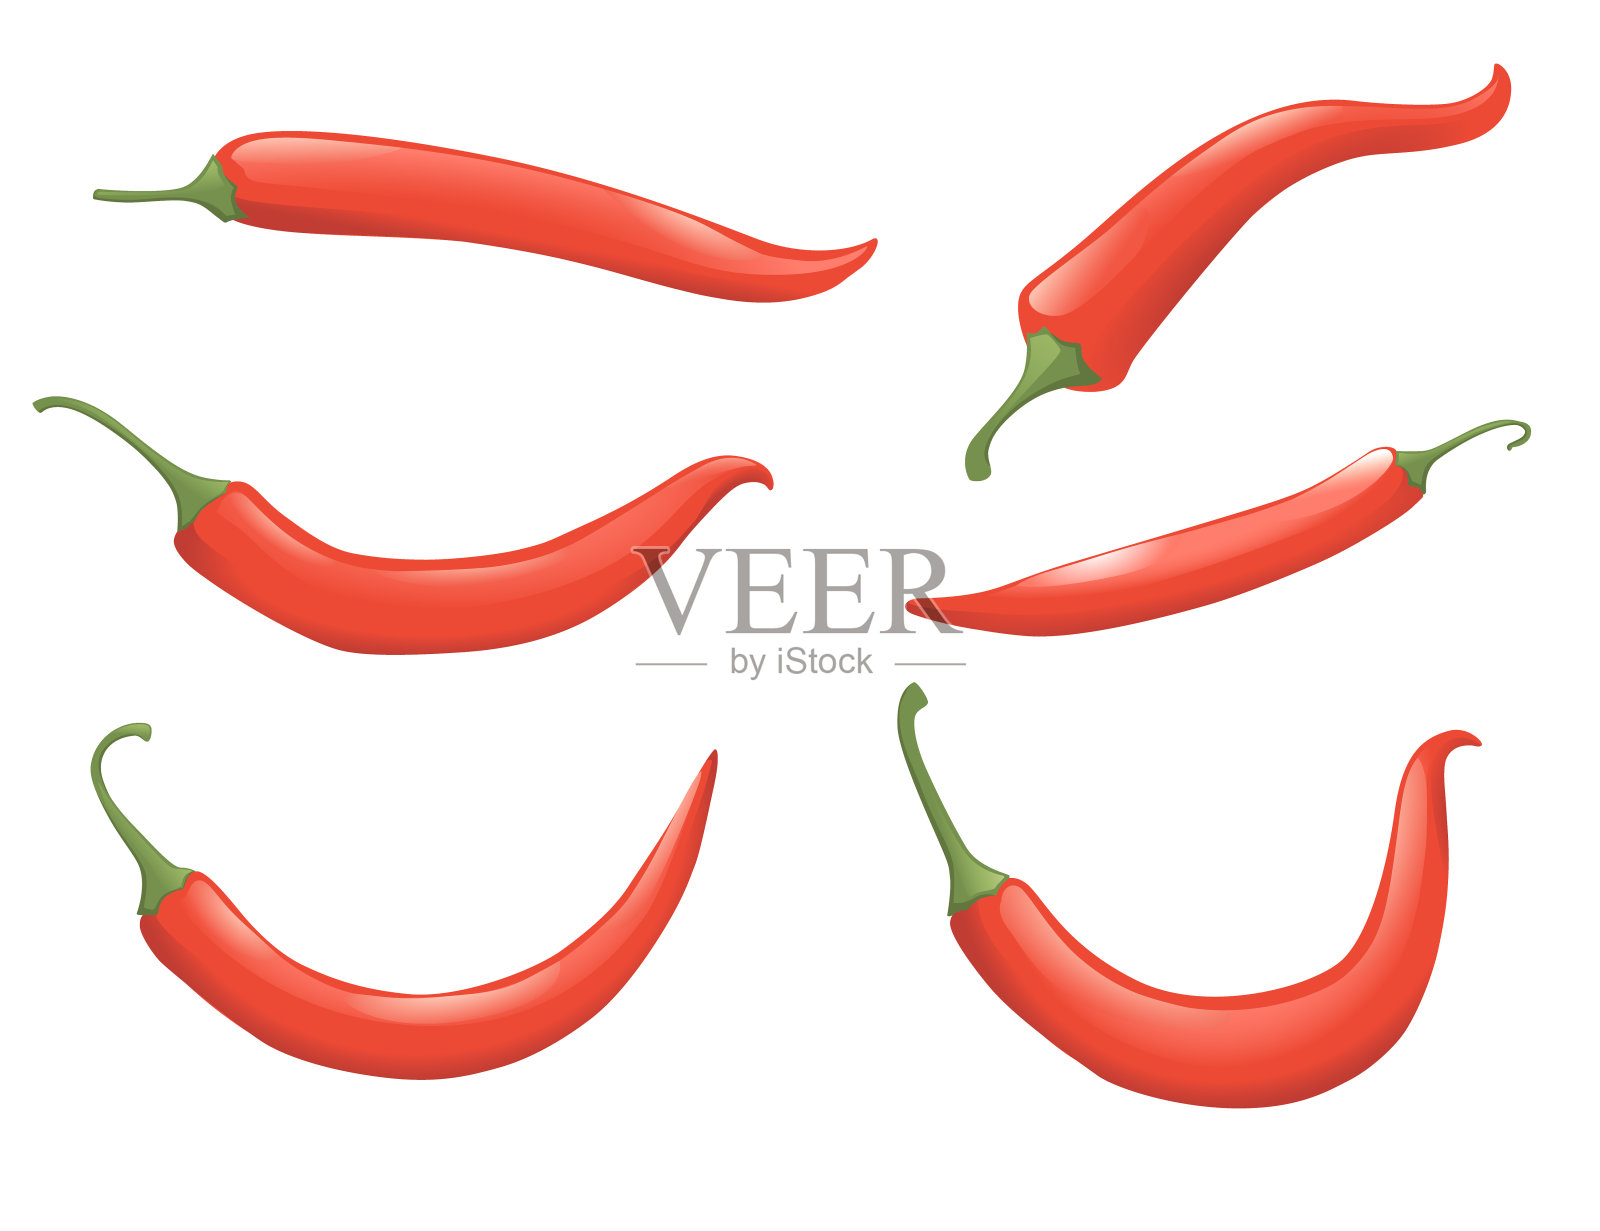 一套红辣椒平面辣椒矢量图的辣菜辛辣食材插画图片素材